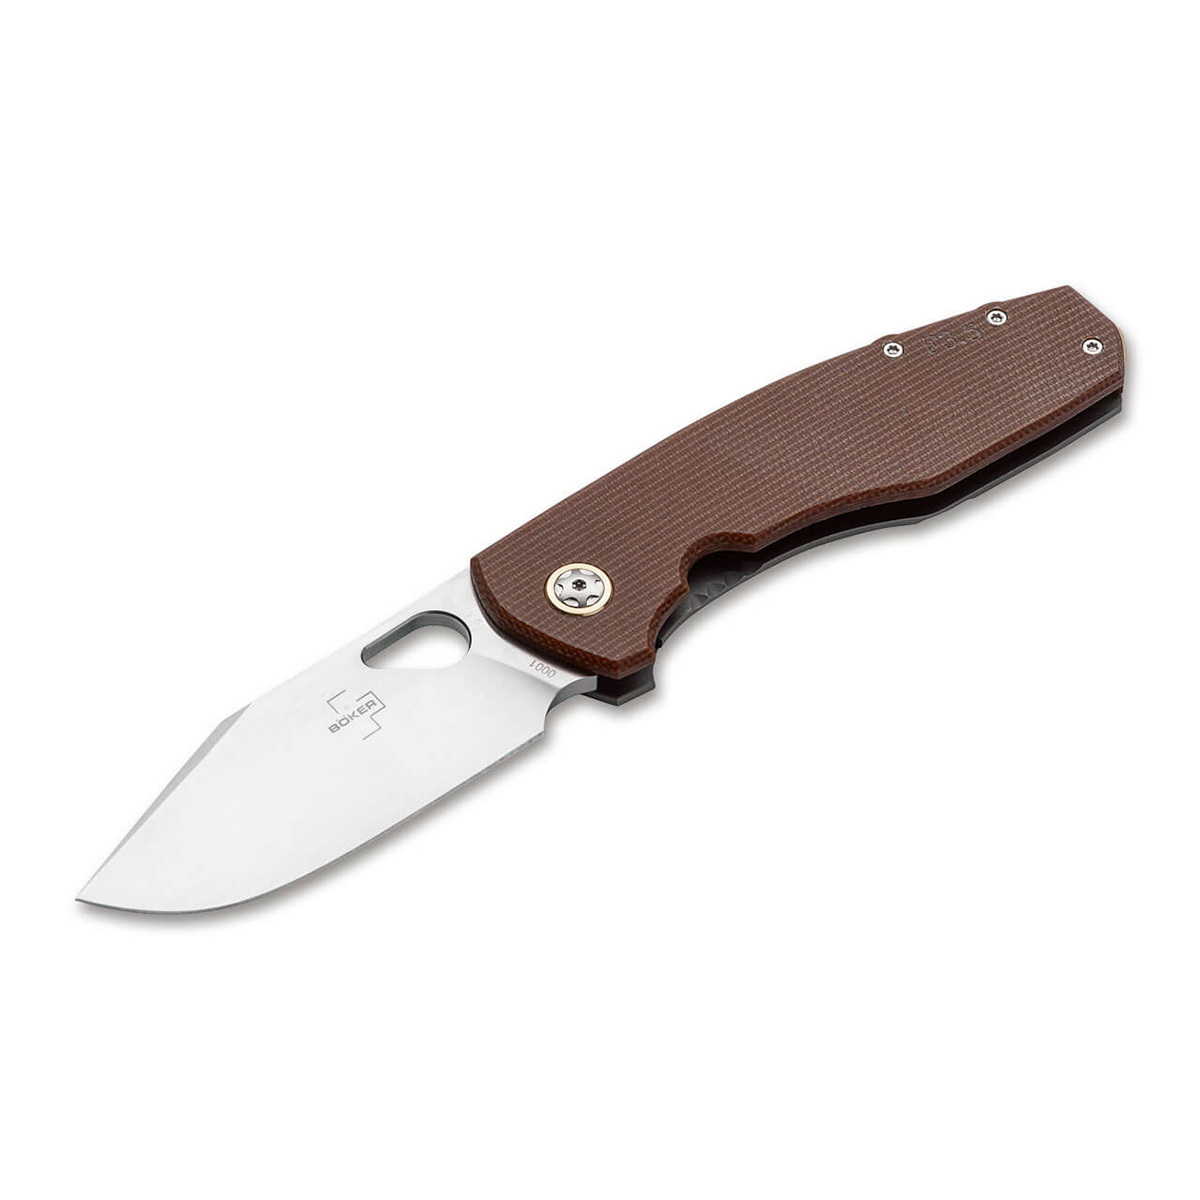 Нож складной Boker Vox F3.5 Micarta, сталь D2, рукоять микарта складной нож civivi knives elementum button lock 8 8 см сталь sandvik 14c28n рукоять olive micarta